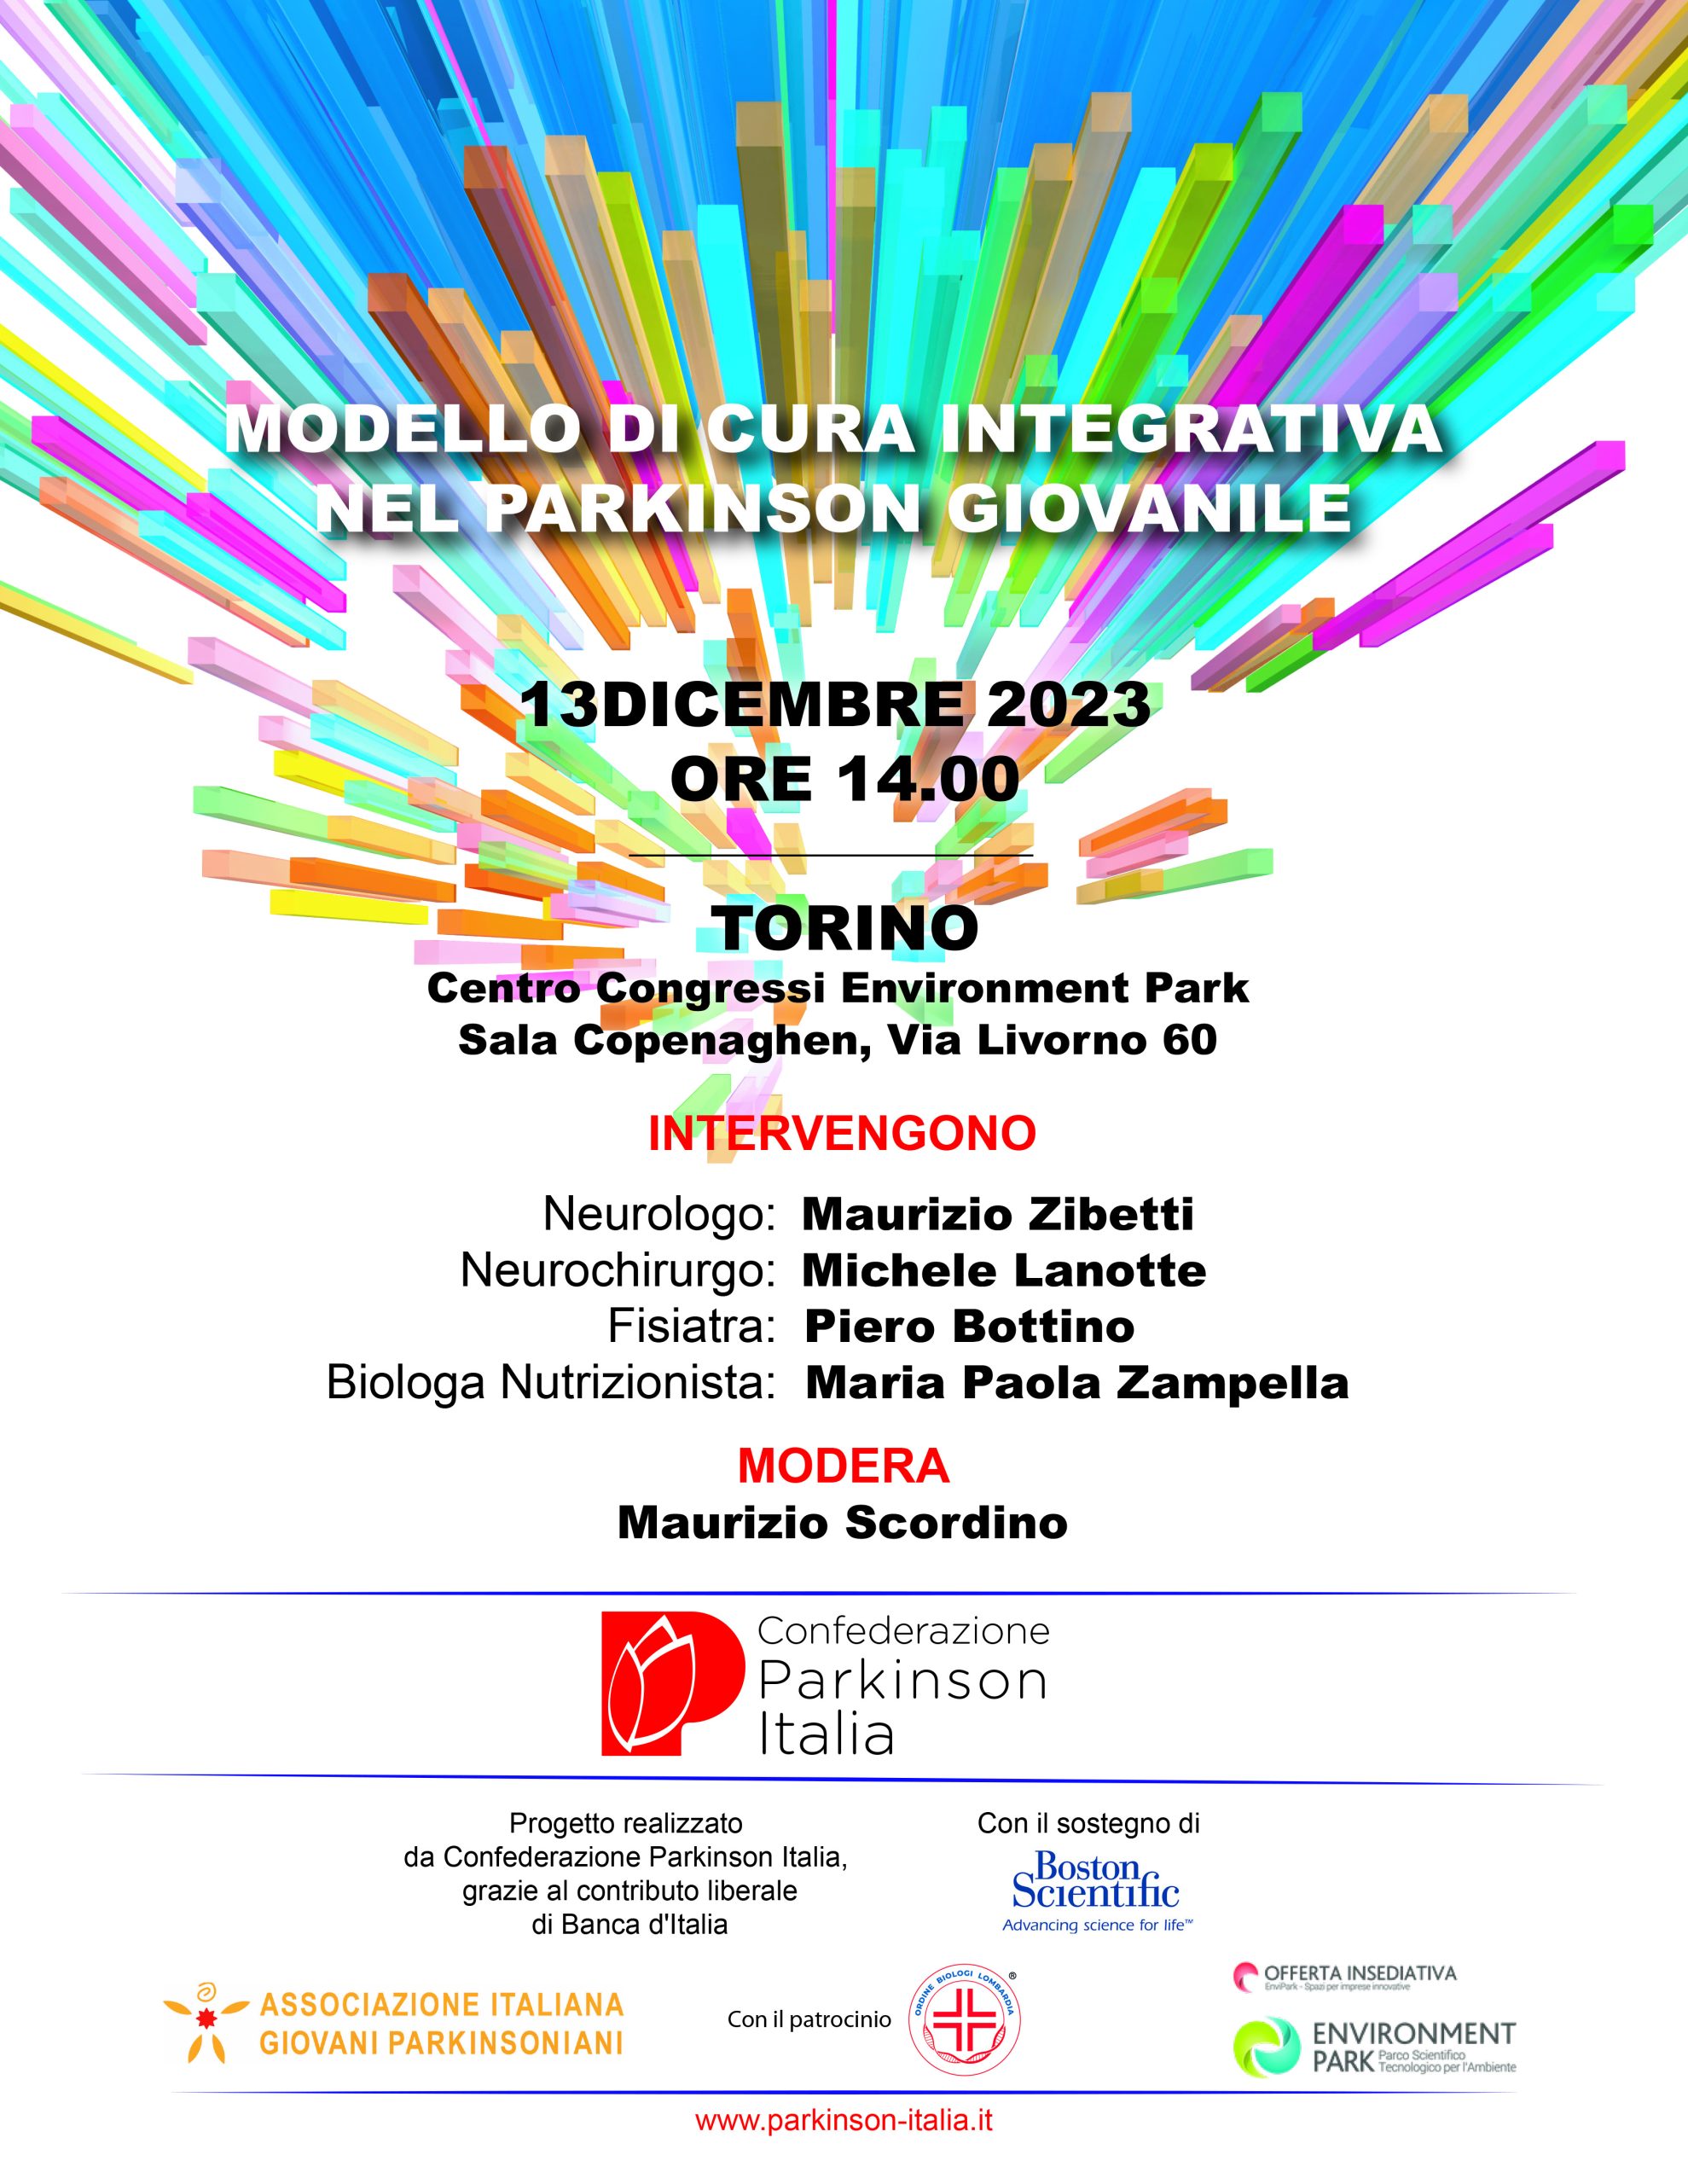 Modello di Cura Integrativa nel Parkinson giovanile: Torino 13 dicembre